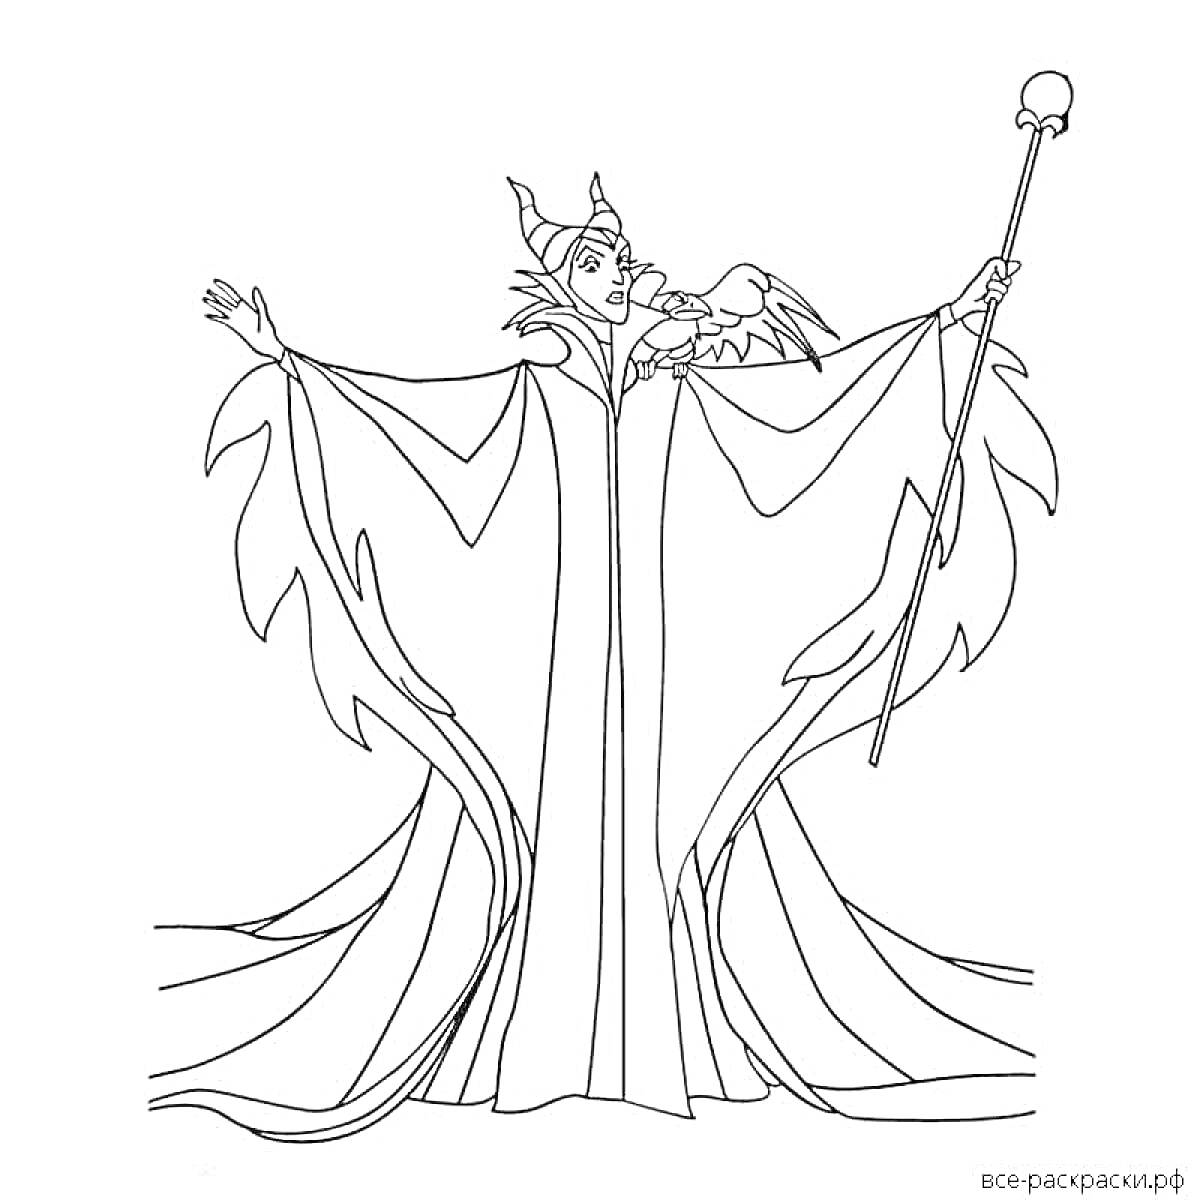 Раскраска Малефисента с роскошным плащом, посохом и вороном на плече